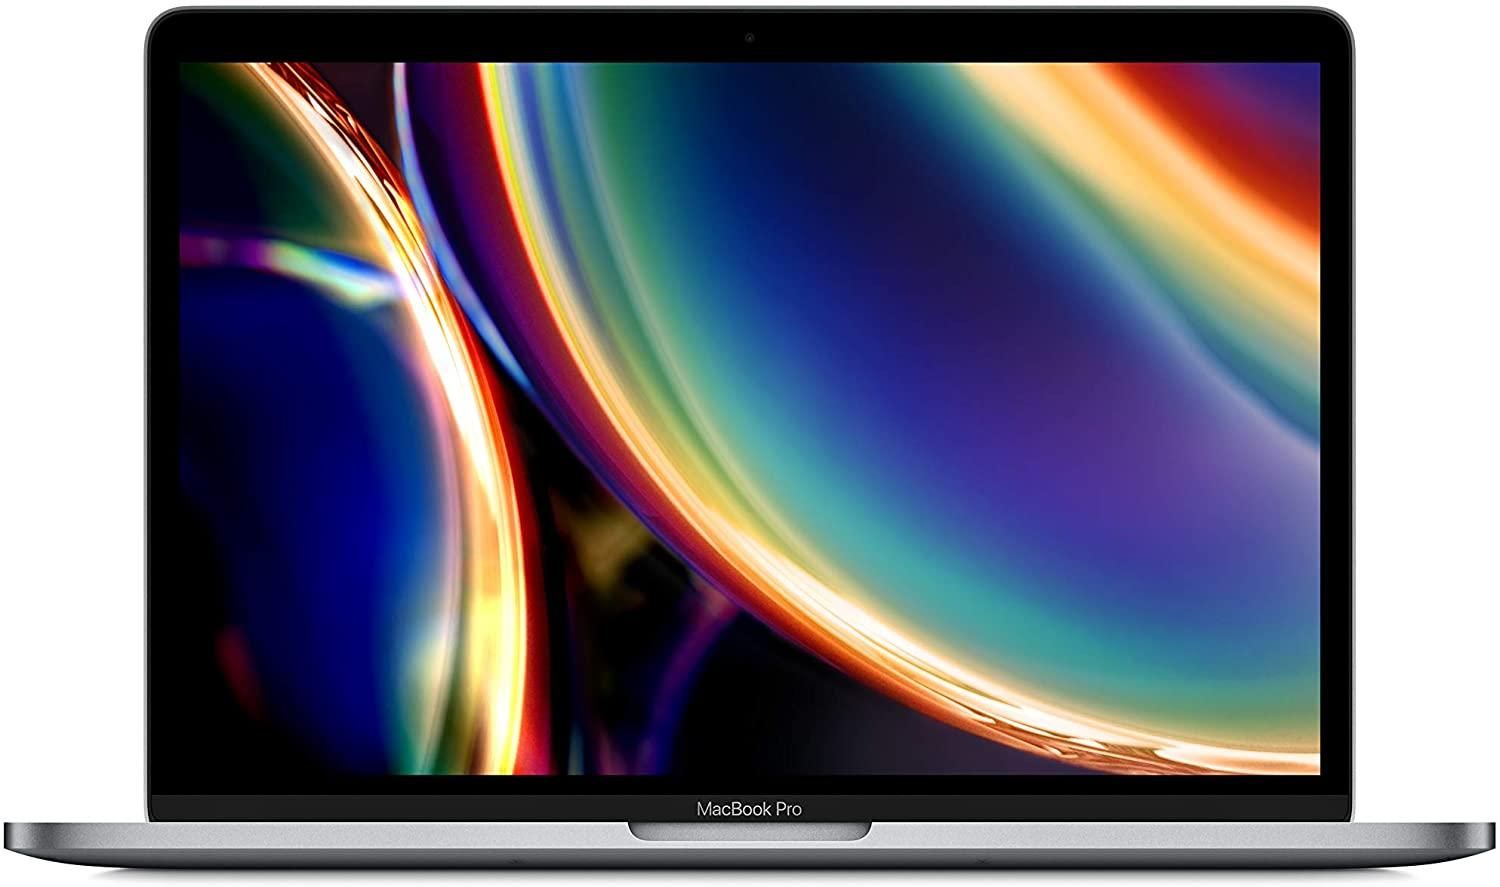 Intel MacBook Pro for intensive workloads